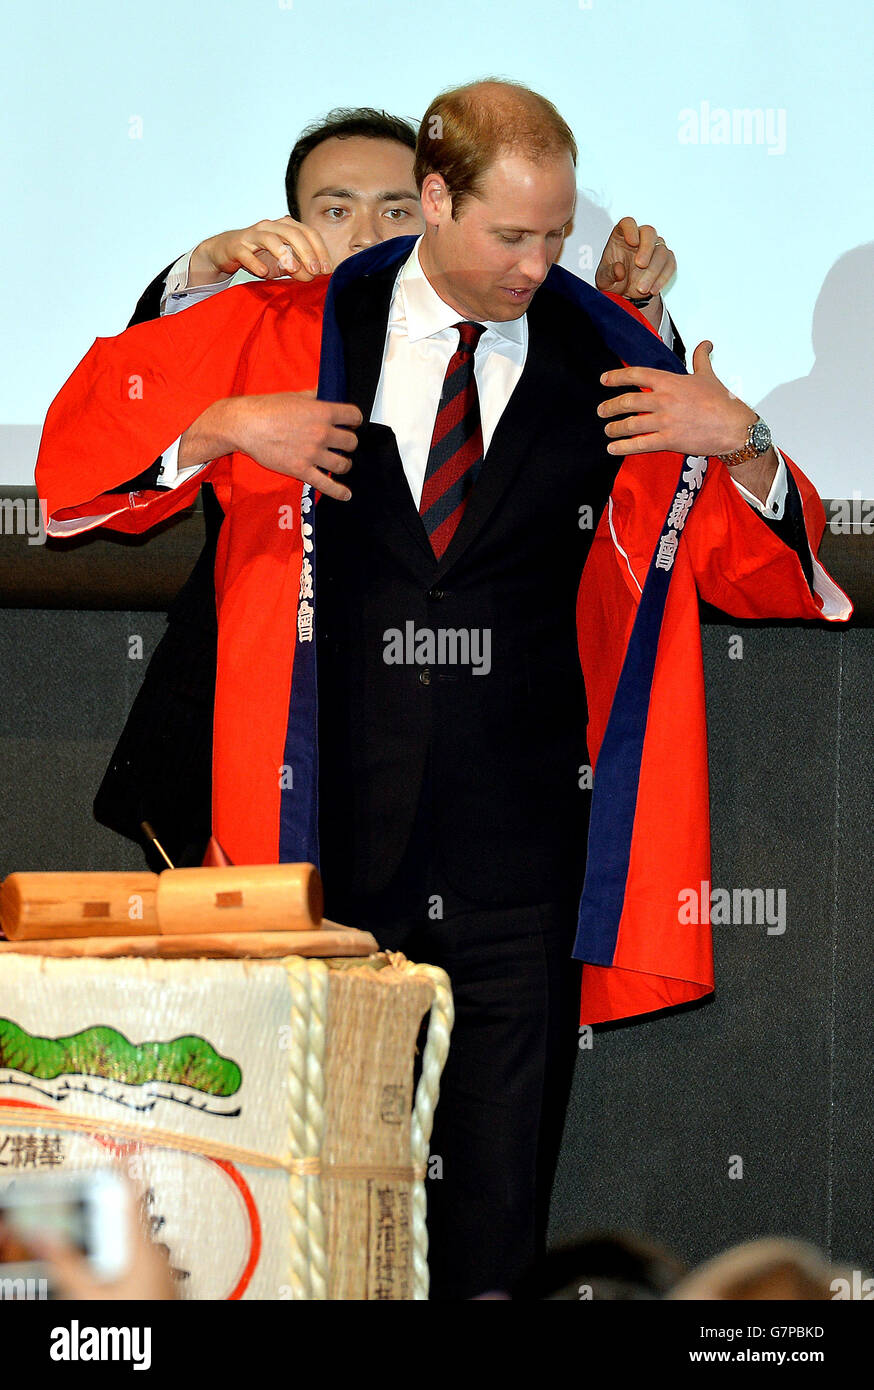 Le duc de Cambridge est vêtu d'un manteau Happi japonais avant un rituel de  canon cassant de Saki, à l'innovation est GRANDE conférence à l'Académie  Mori dans le centre des collines de